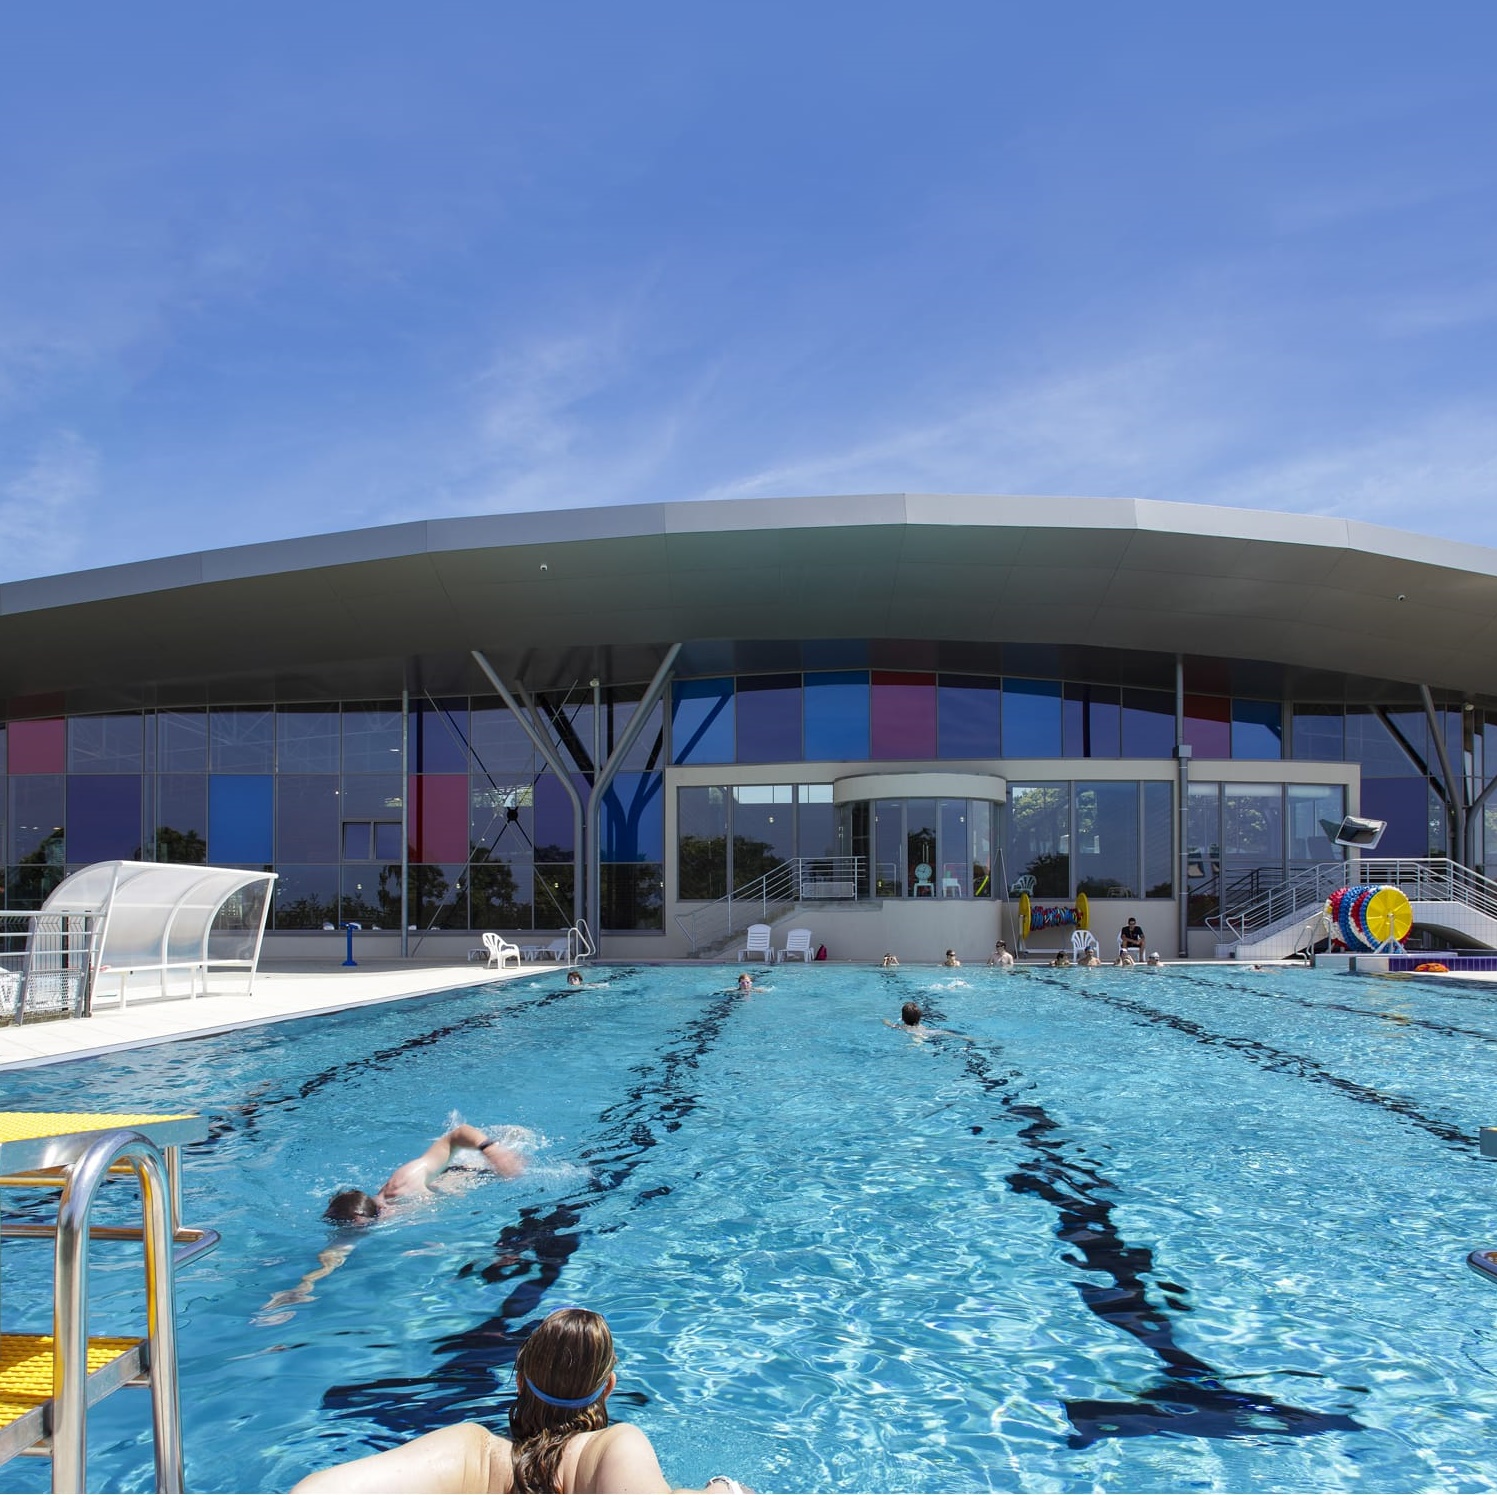 Le centre aquatique de Fougères récompensé de quatre étoiles par l'association La piscine de demain pour sa démarche environnementale - Ille-et-Vilaine (35)